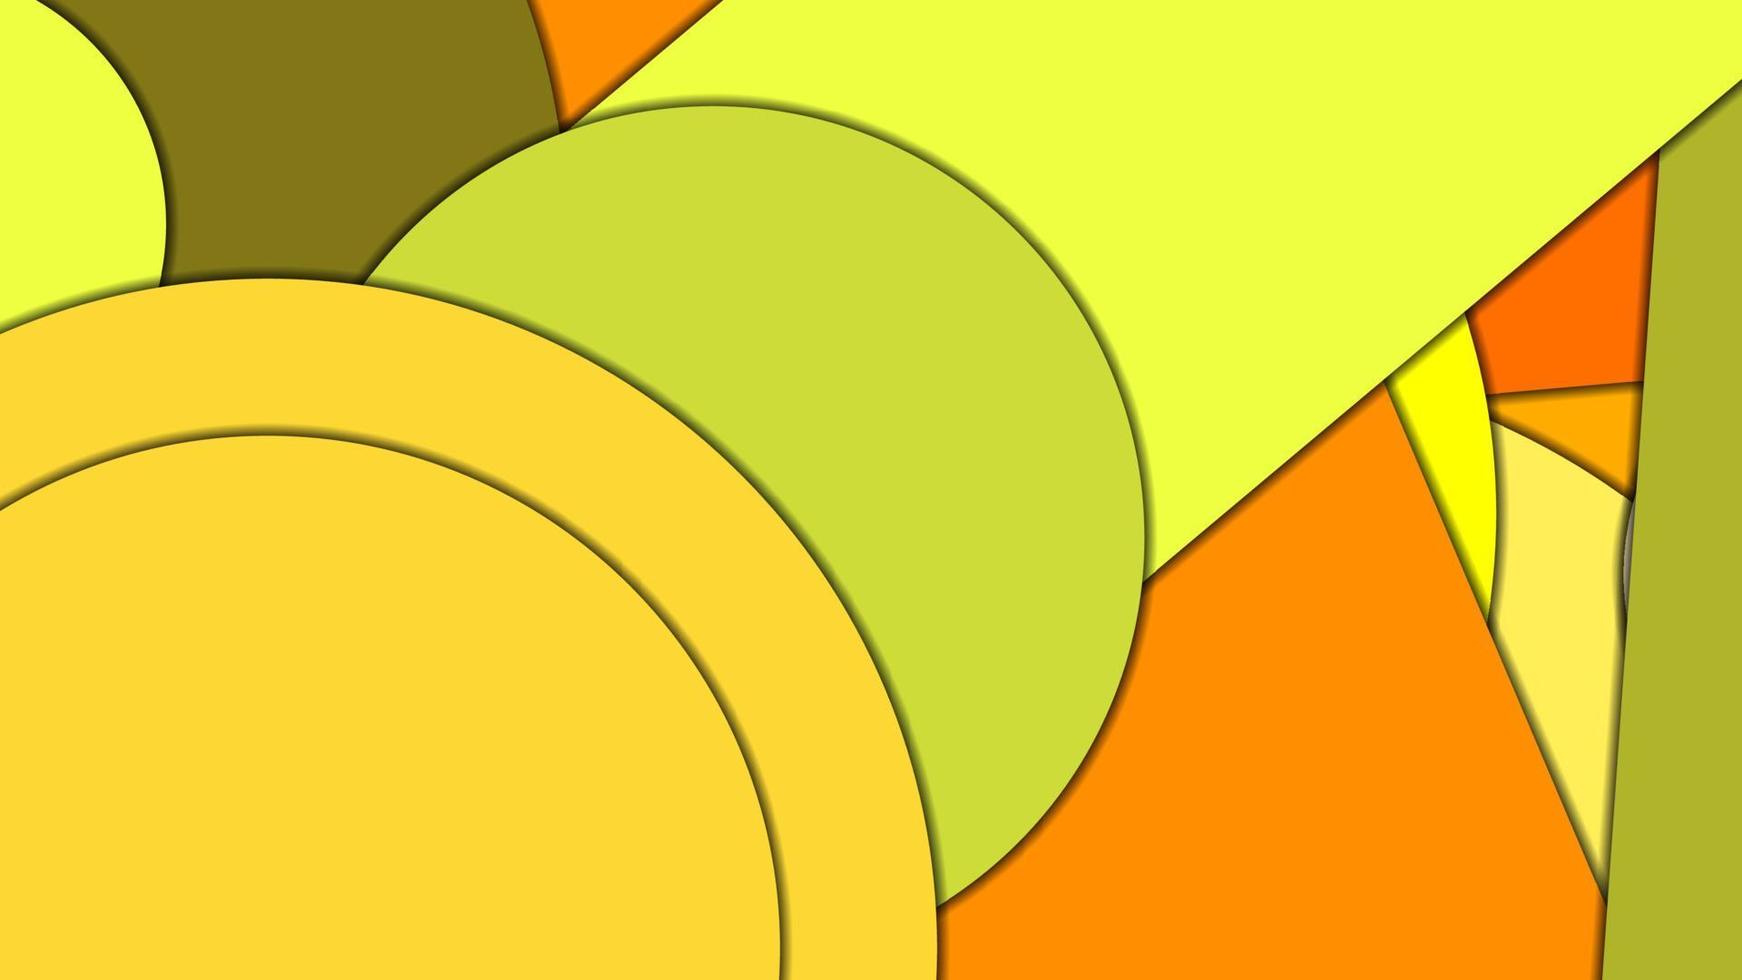 abstrakter geometrischer Vektorhintergrund im Materialdesign-Stil mit einer begrenzten harmonisierten Palette, mit konzentrischen Kreisen und gedrehten Rechtecken mit Schatten, die geschnittenes Papier imitieren. vektor